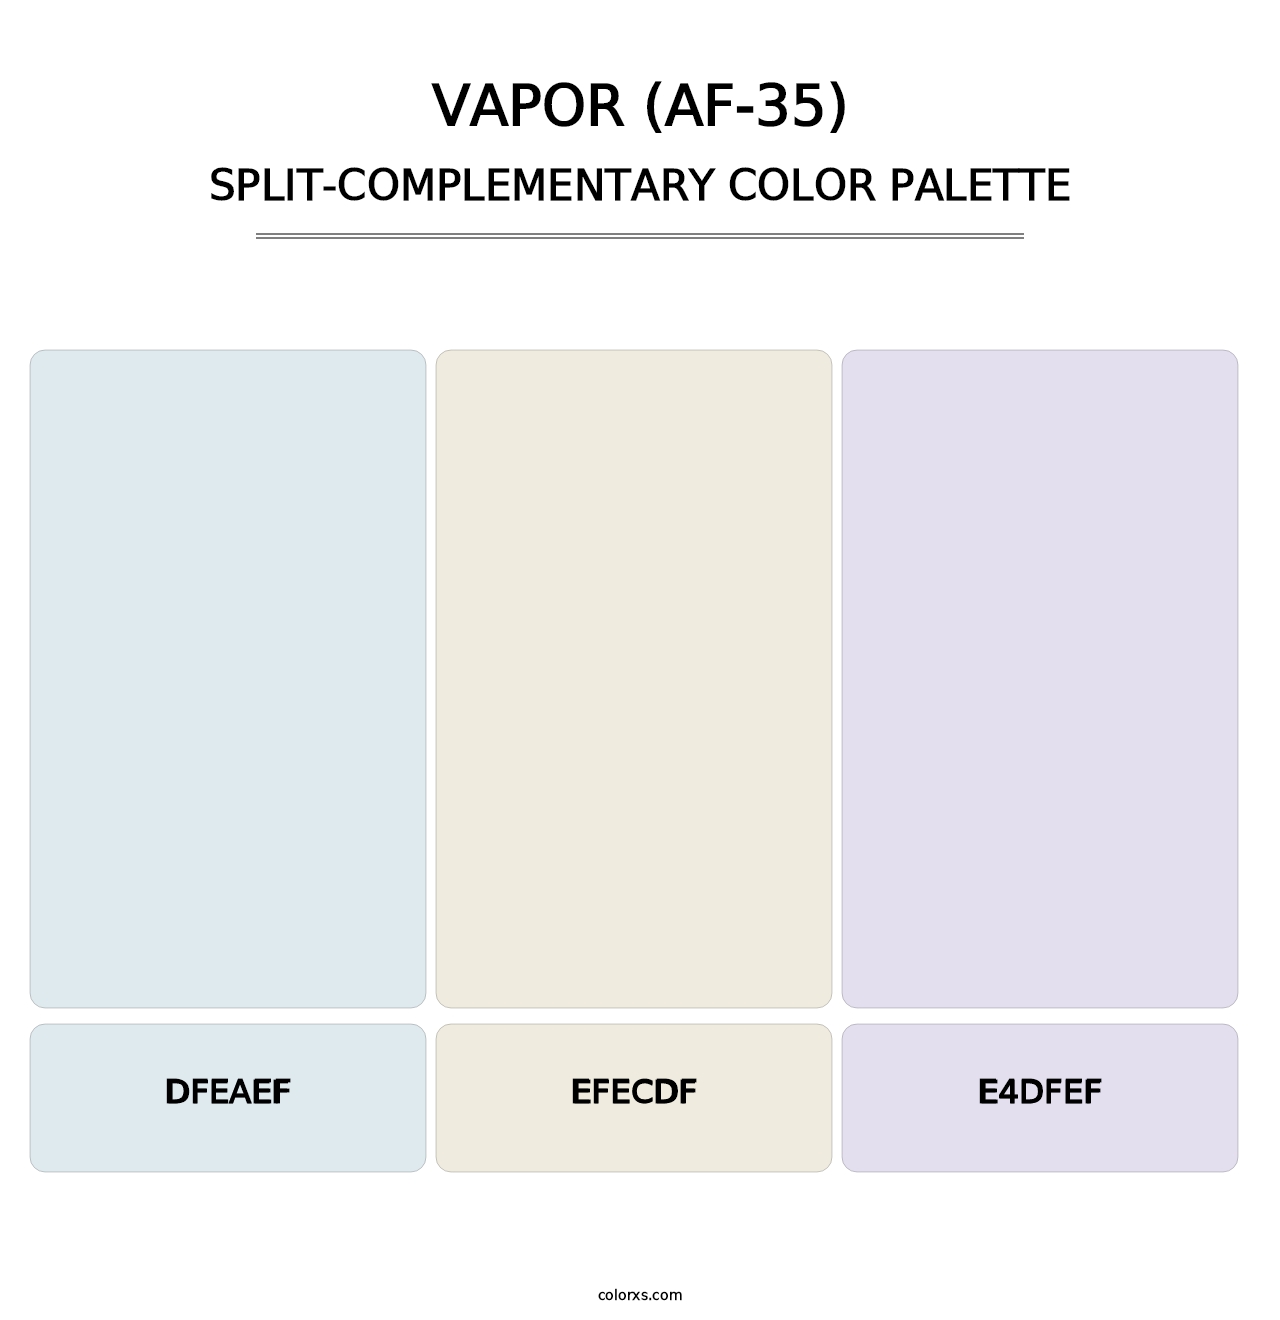 Vapor (AF-35) - Split-Complementary Color Palette